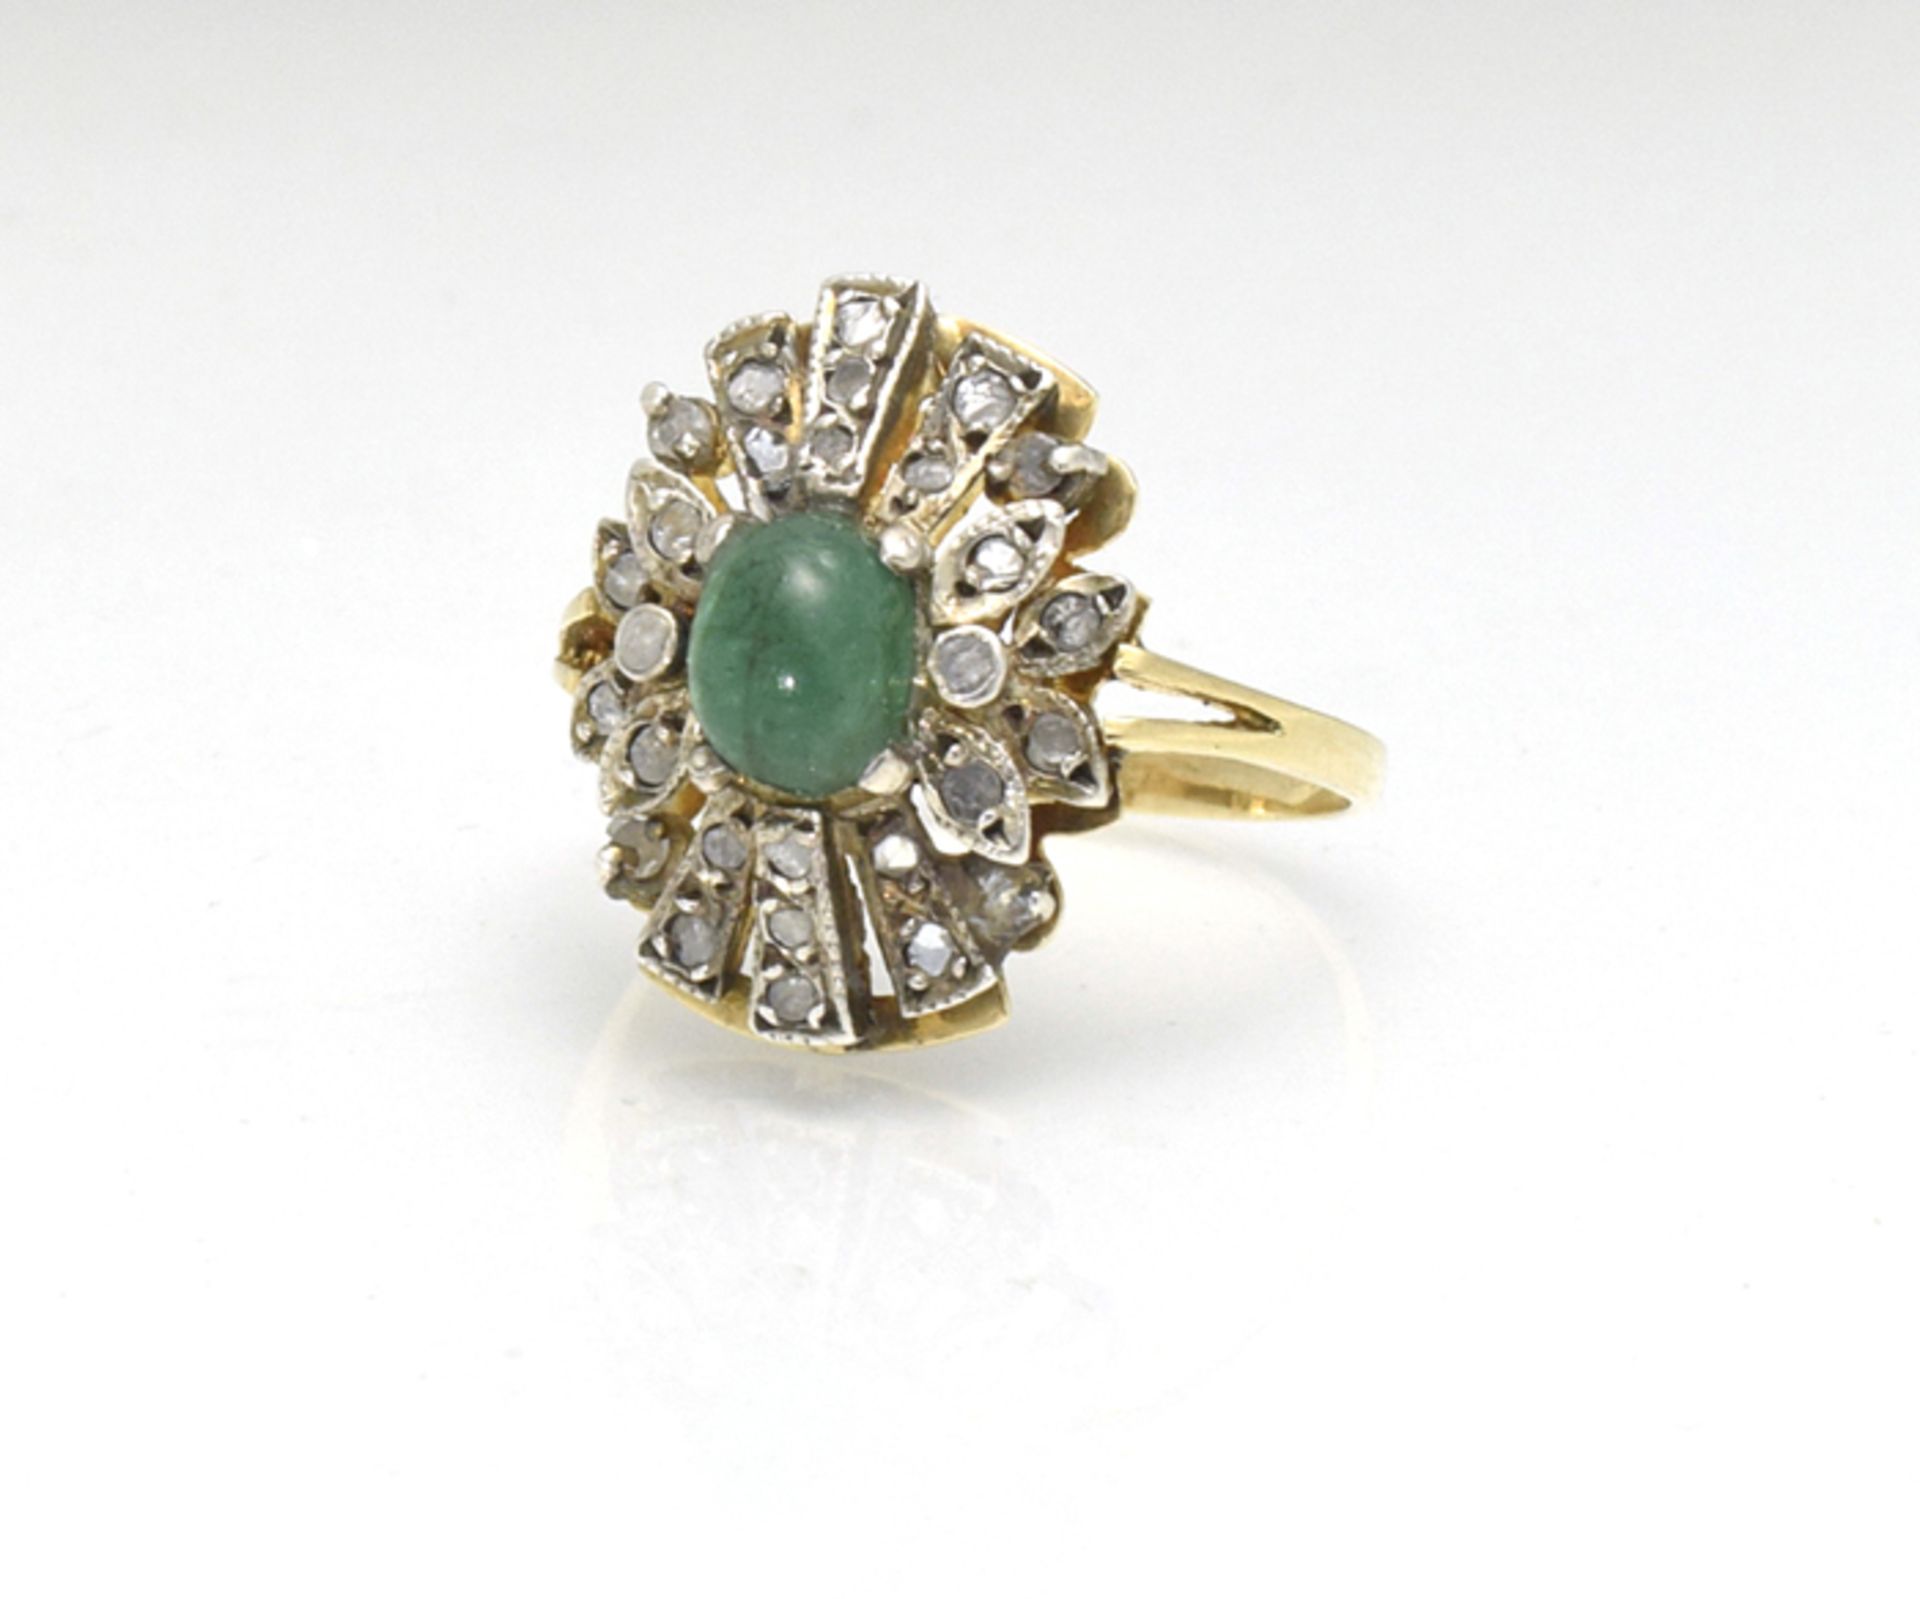 sehr schöner antiker Ring; um 1900; Silber/585 GG; verbödet, Smaragd-Cabochon umgeben von 26